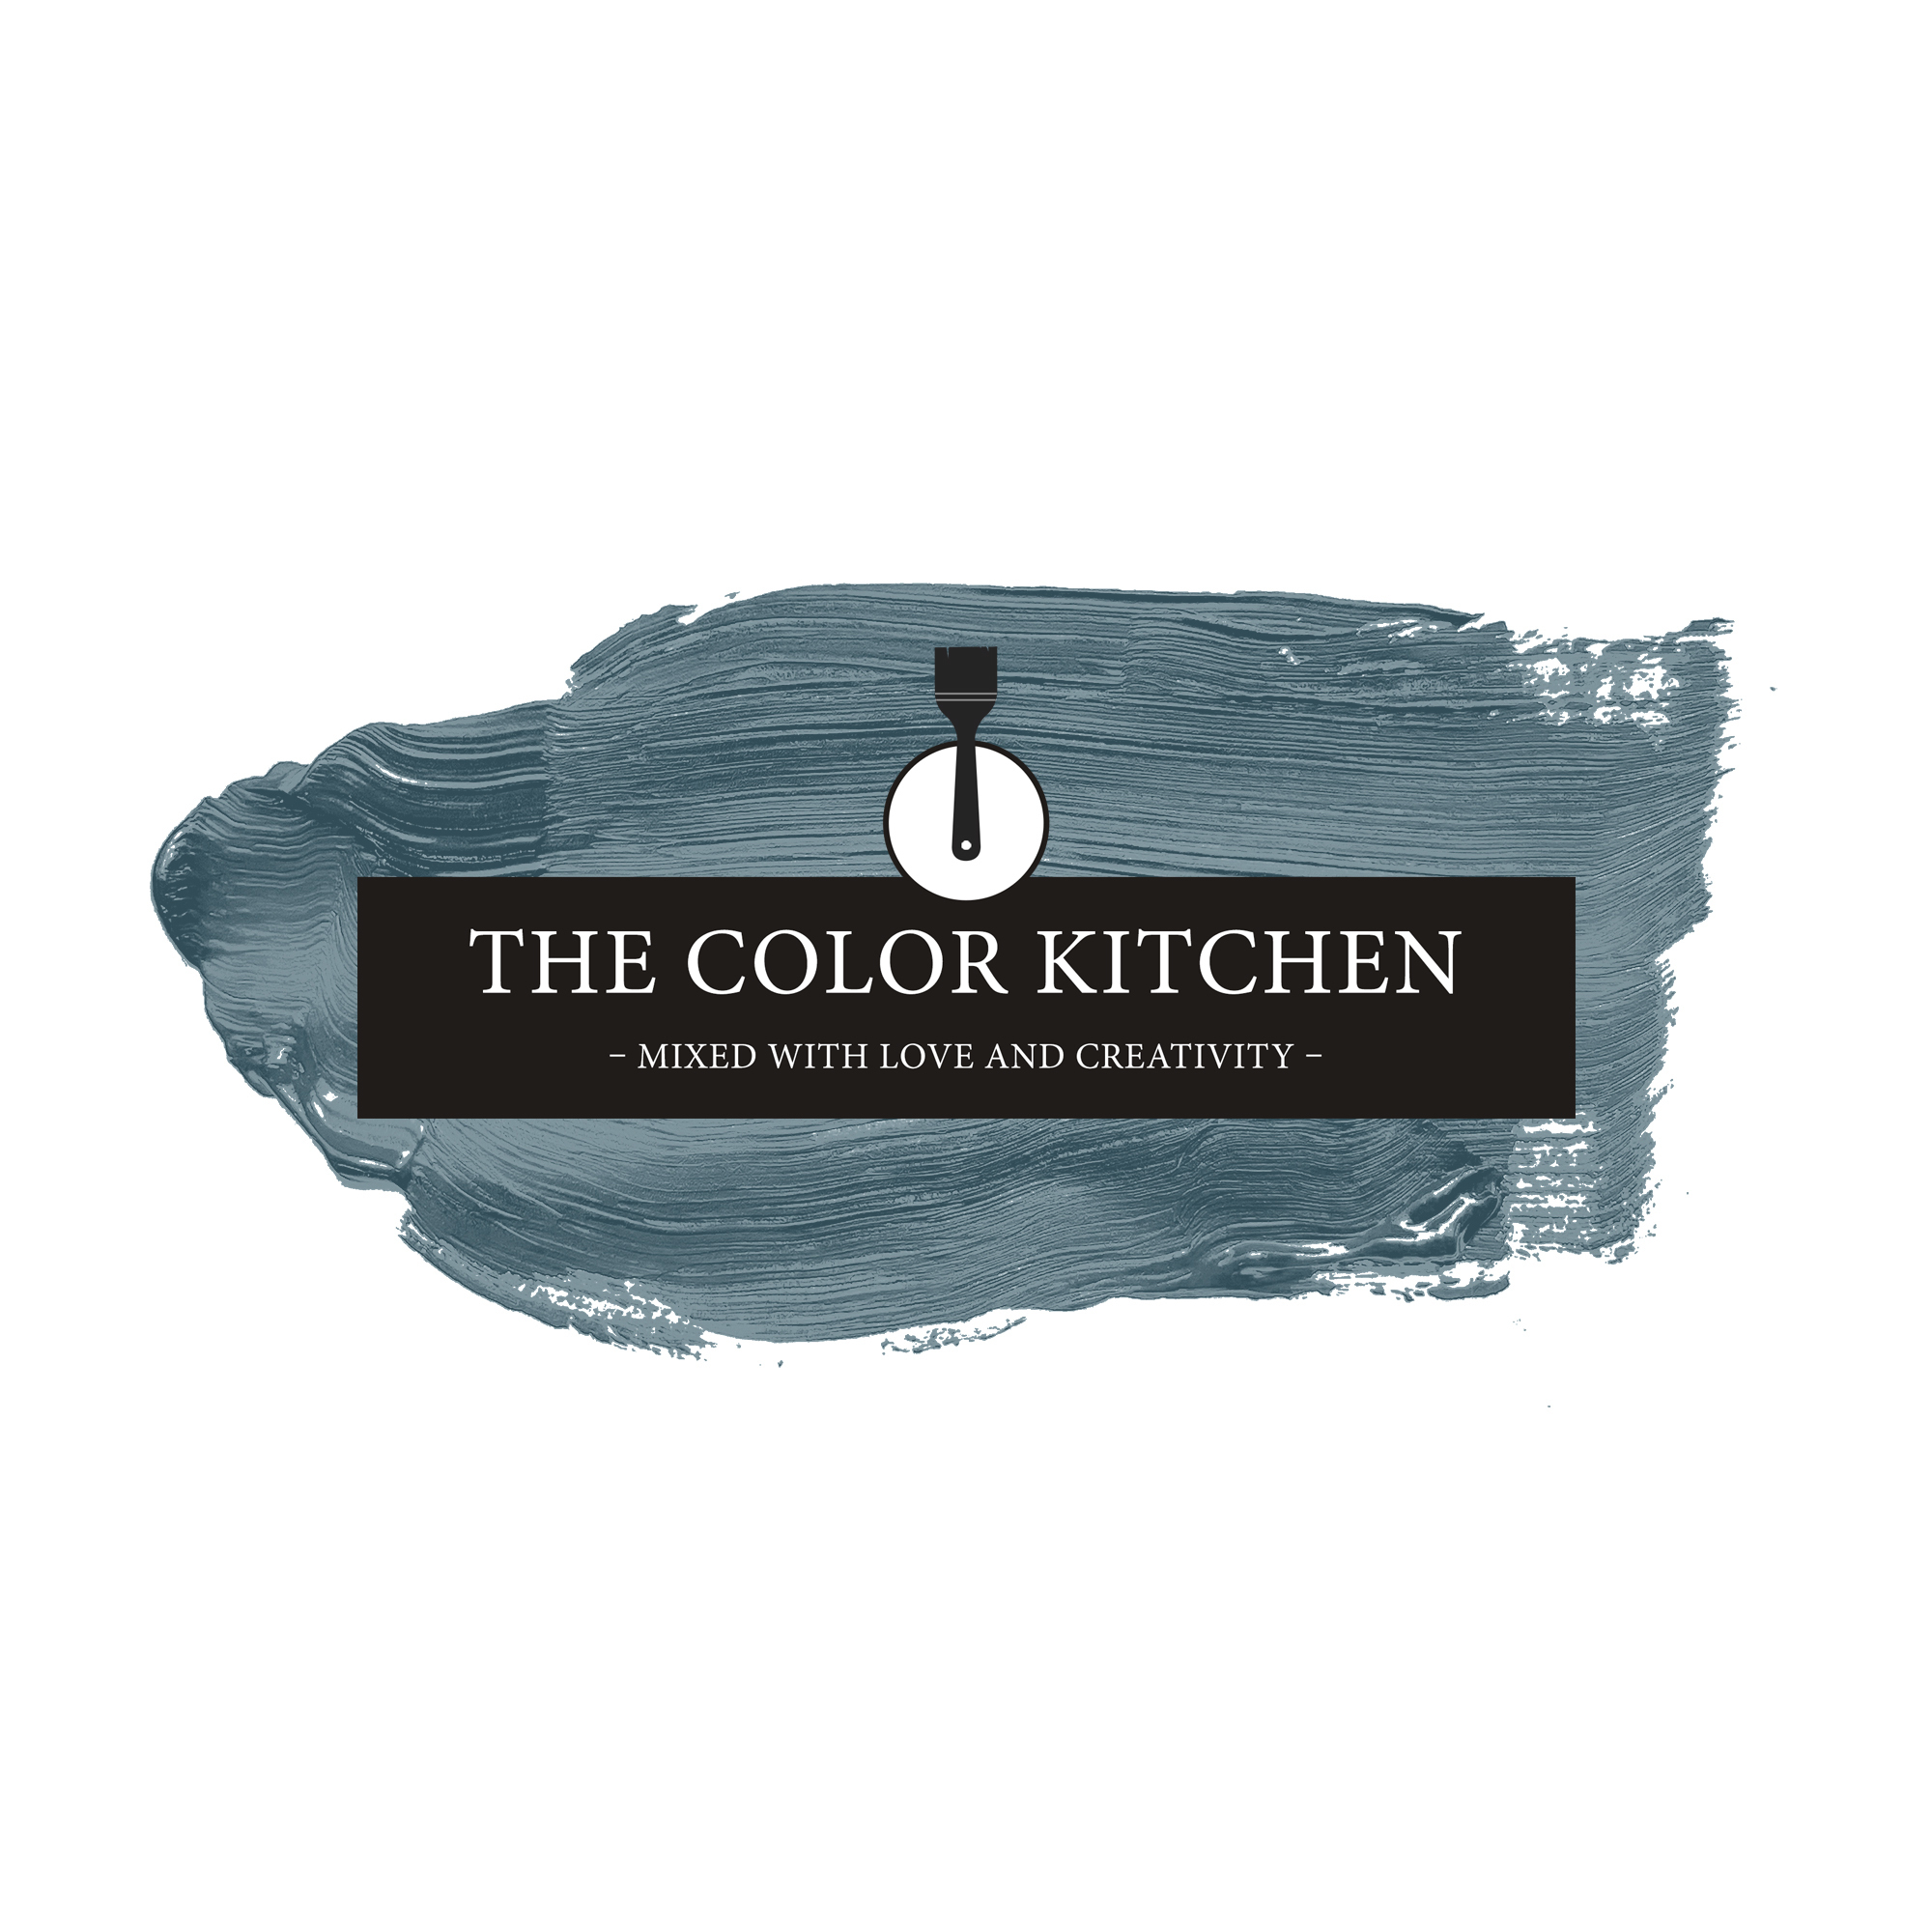 The Color Kitchen Blue Mussel 5 l